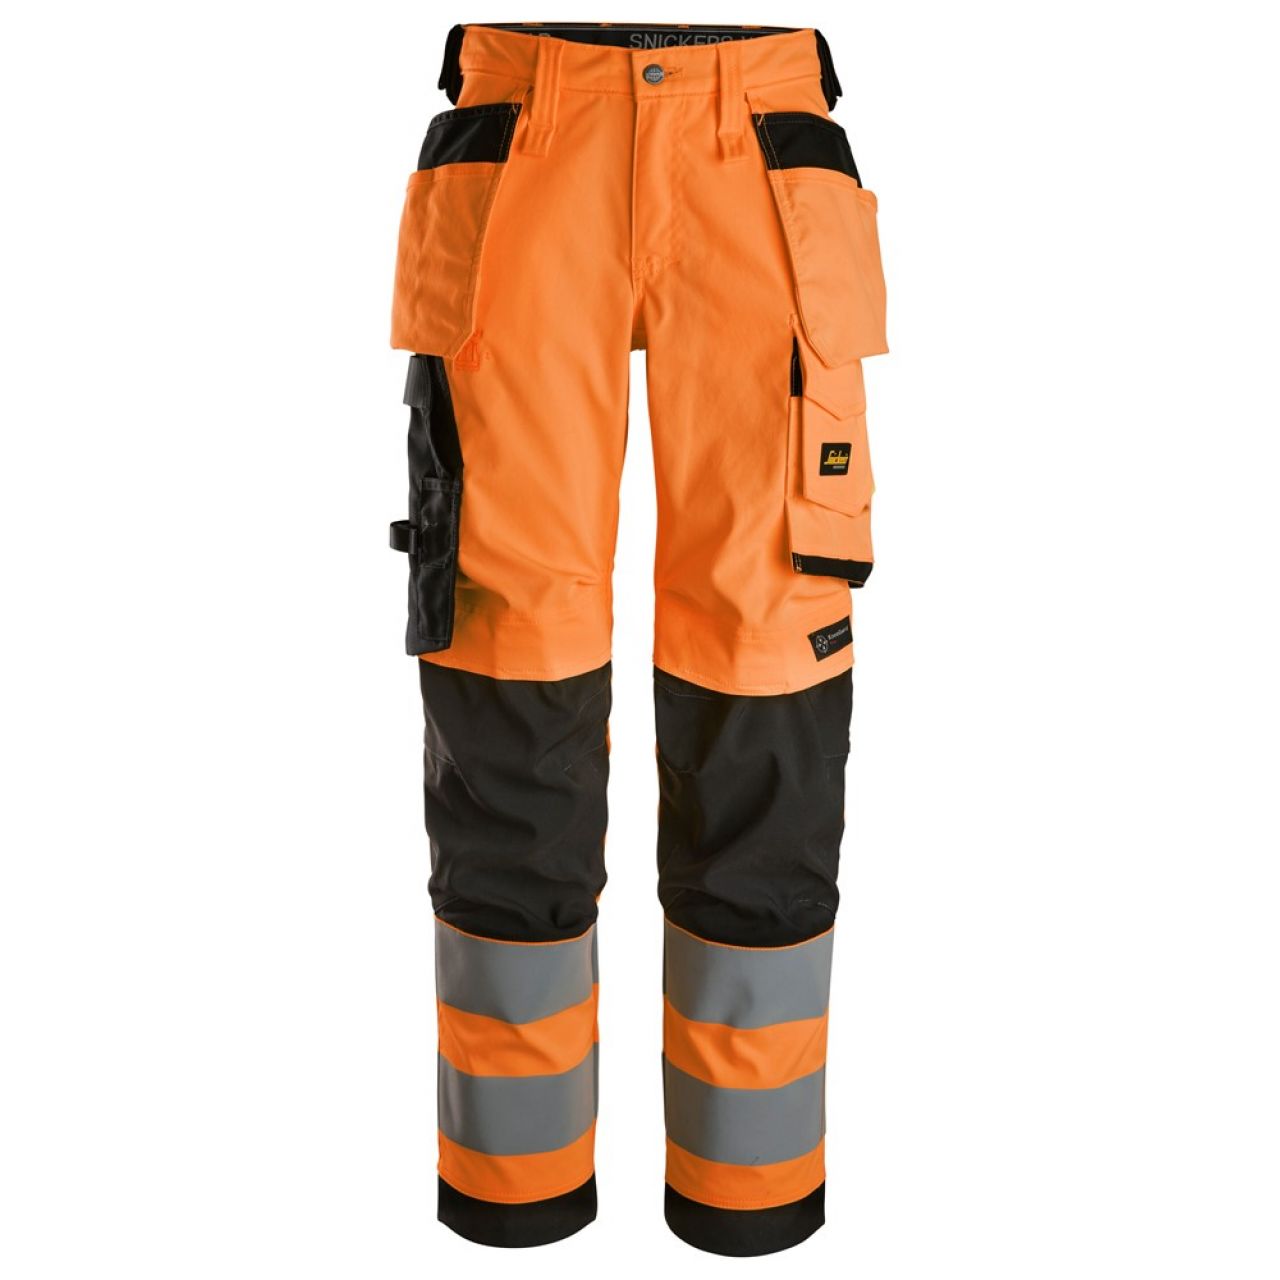 6743 Pantalones largos de trabajo elásticos de alta visibilidad clase 2 para mujer con bolsillos flotantes naranja-negro talla 22